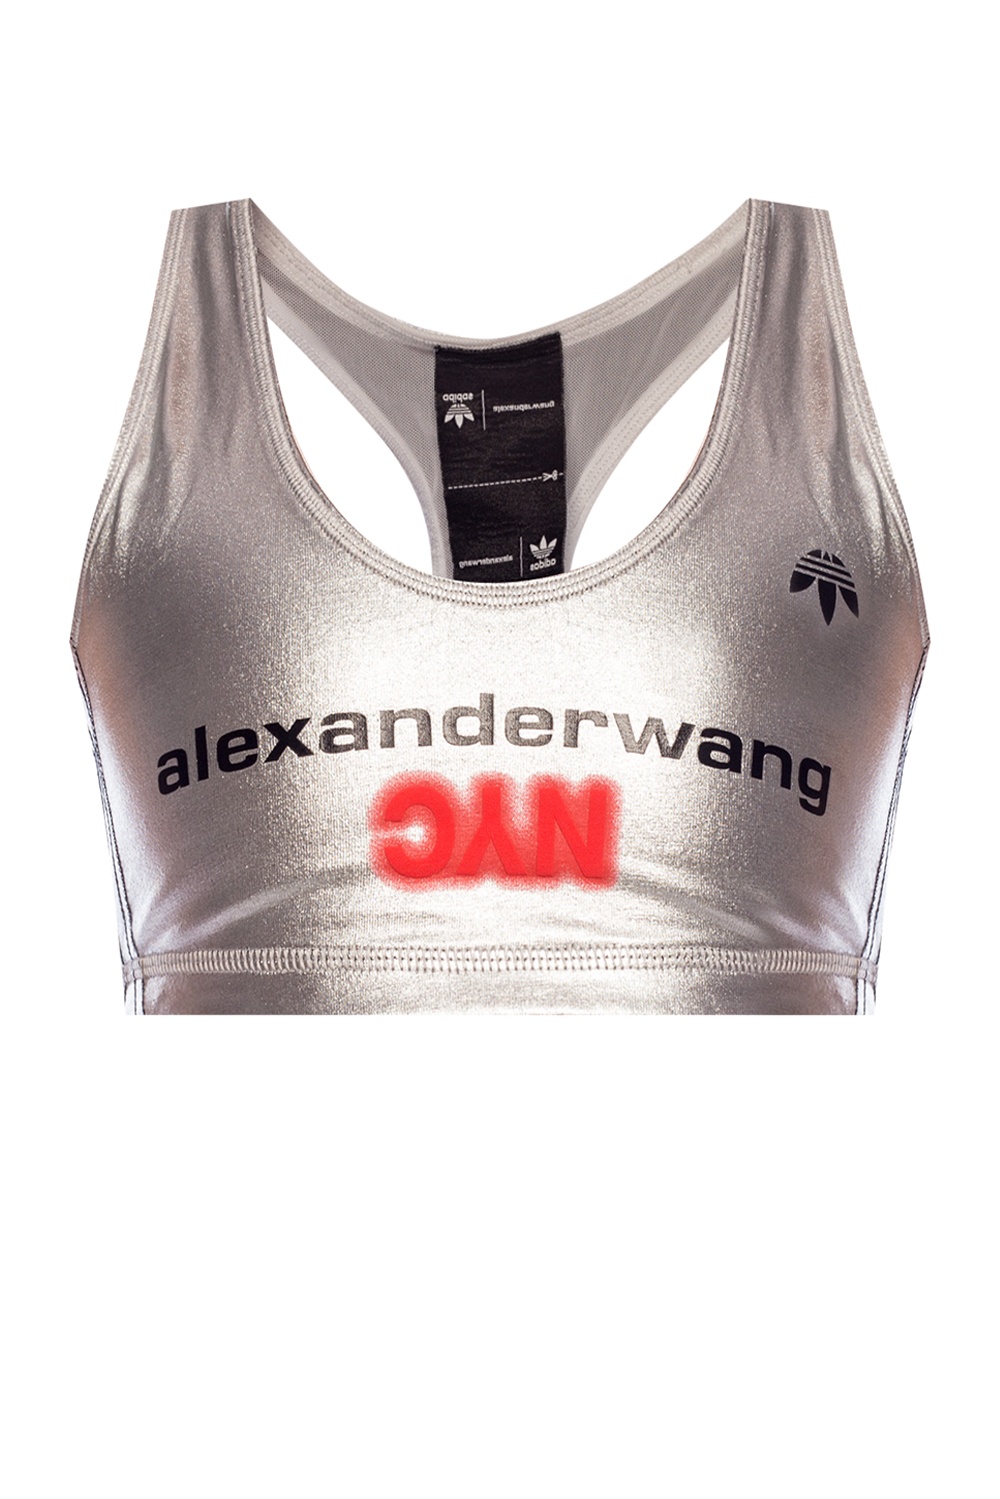 alexander wang adidas silver